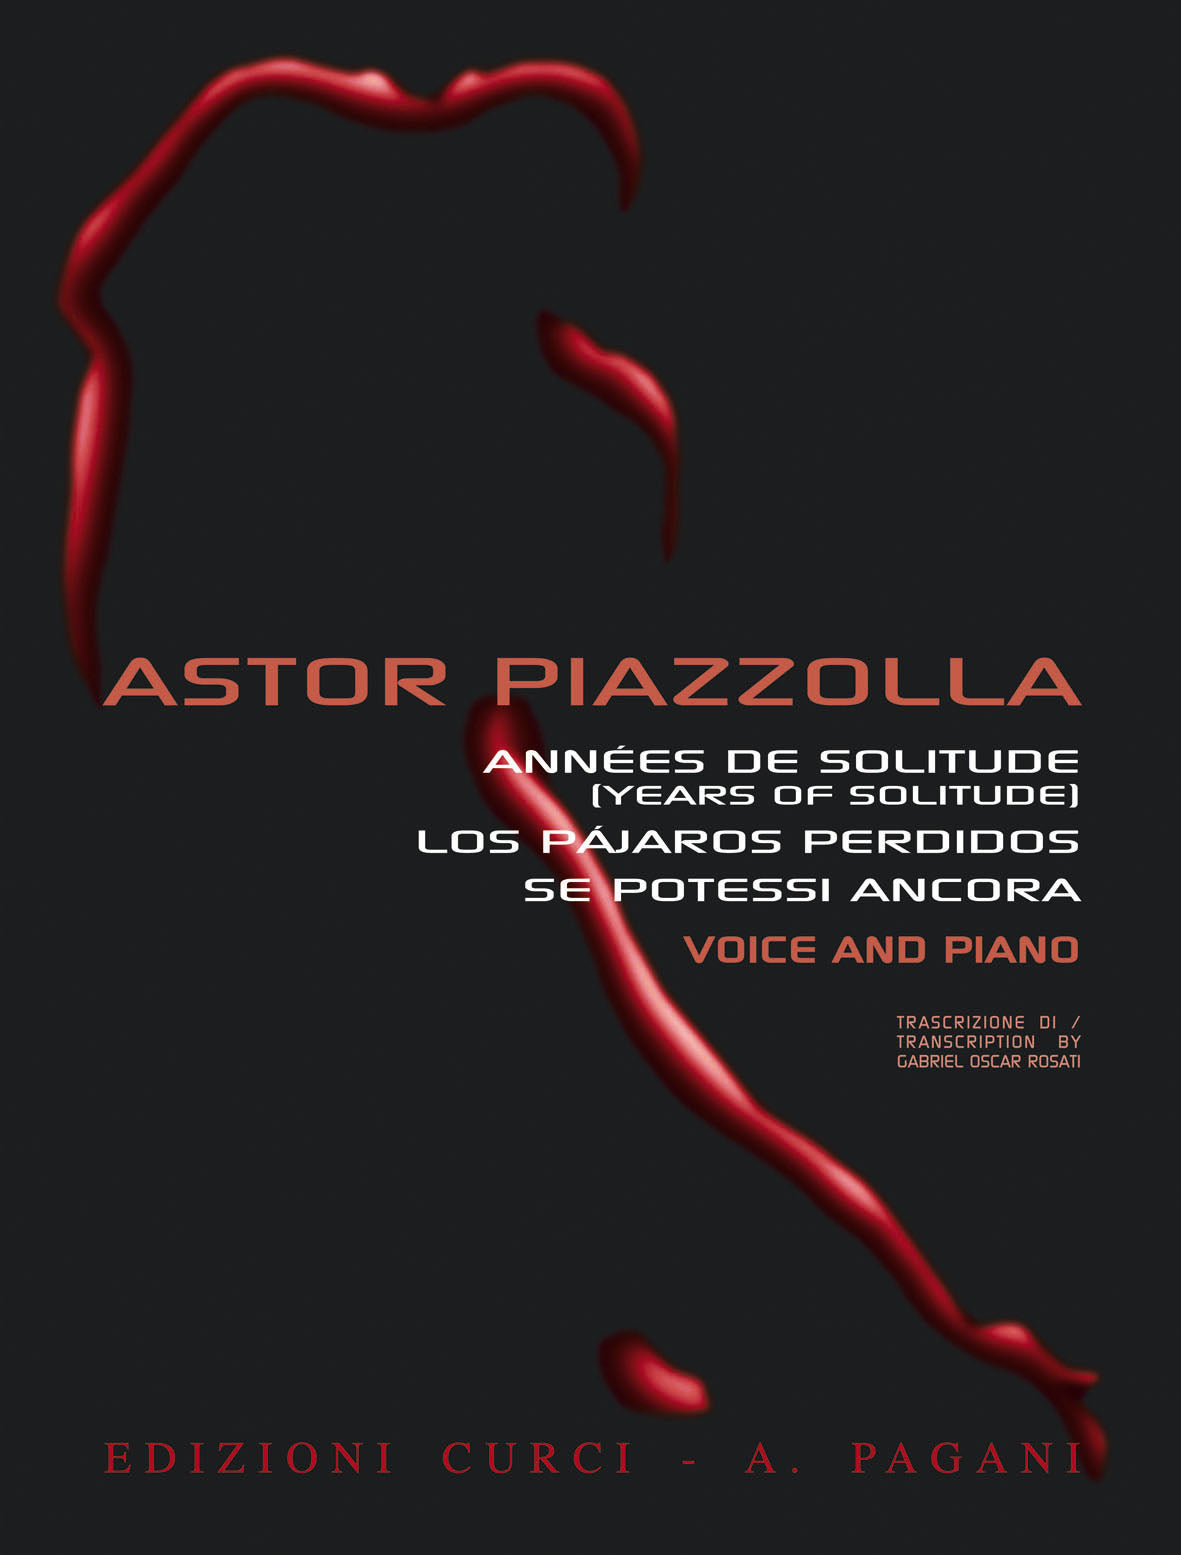 Piazzolla: Années de Solitude (Years of Solitude), Los Pájaros Perdidos, Se potessi ancora